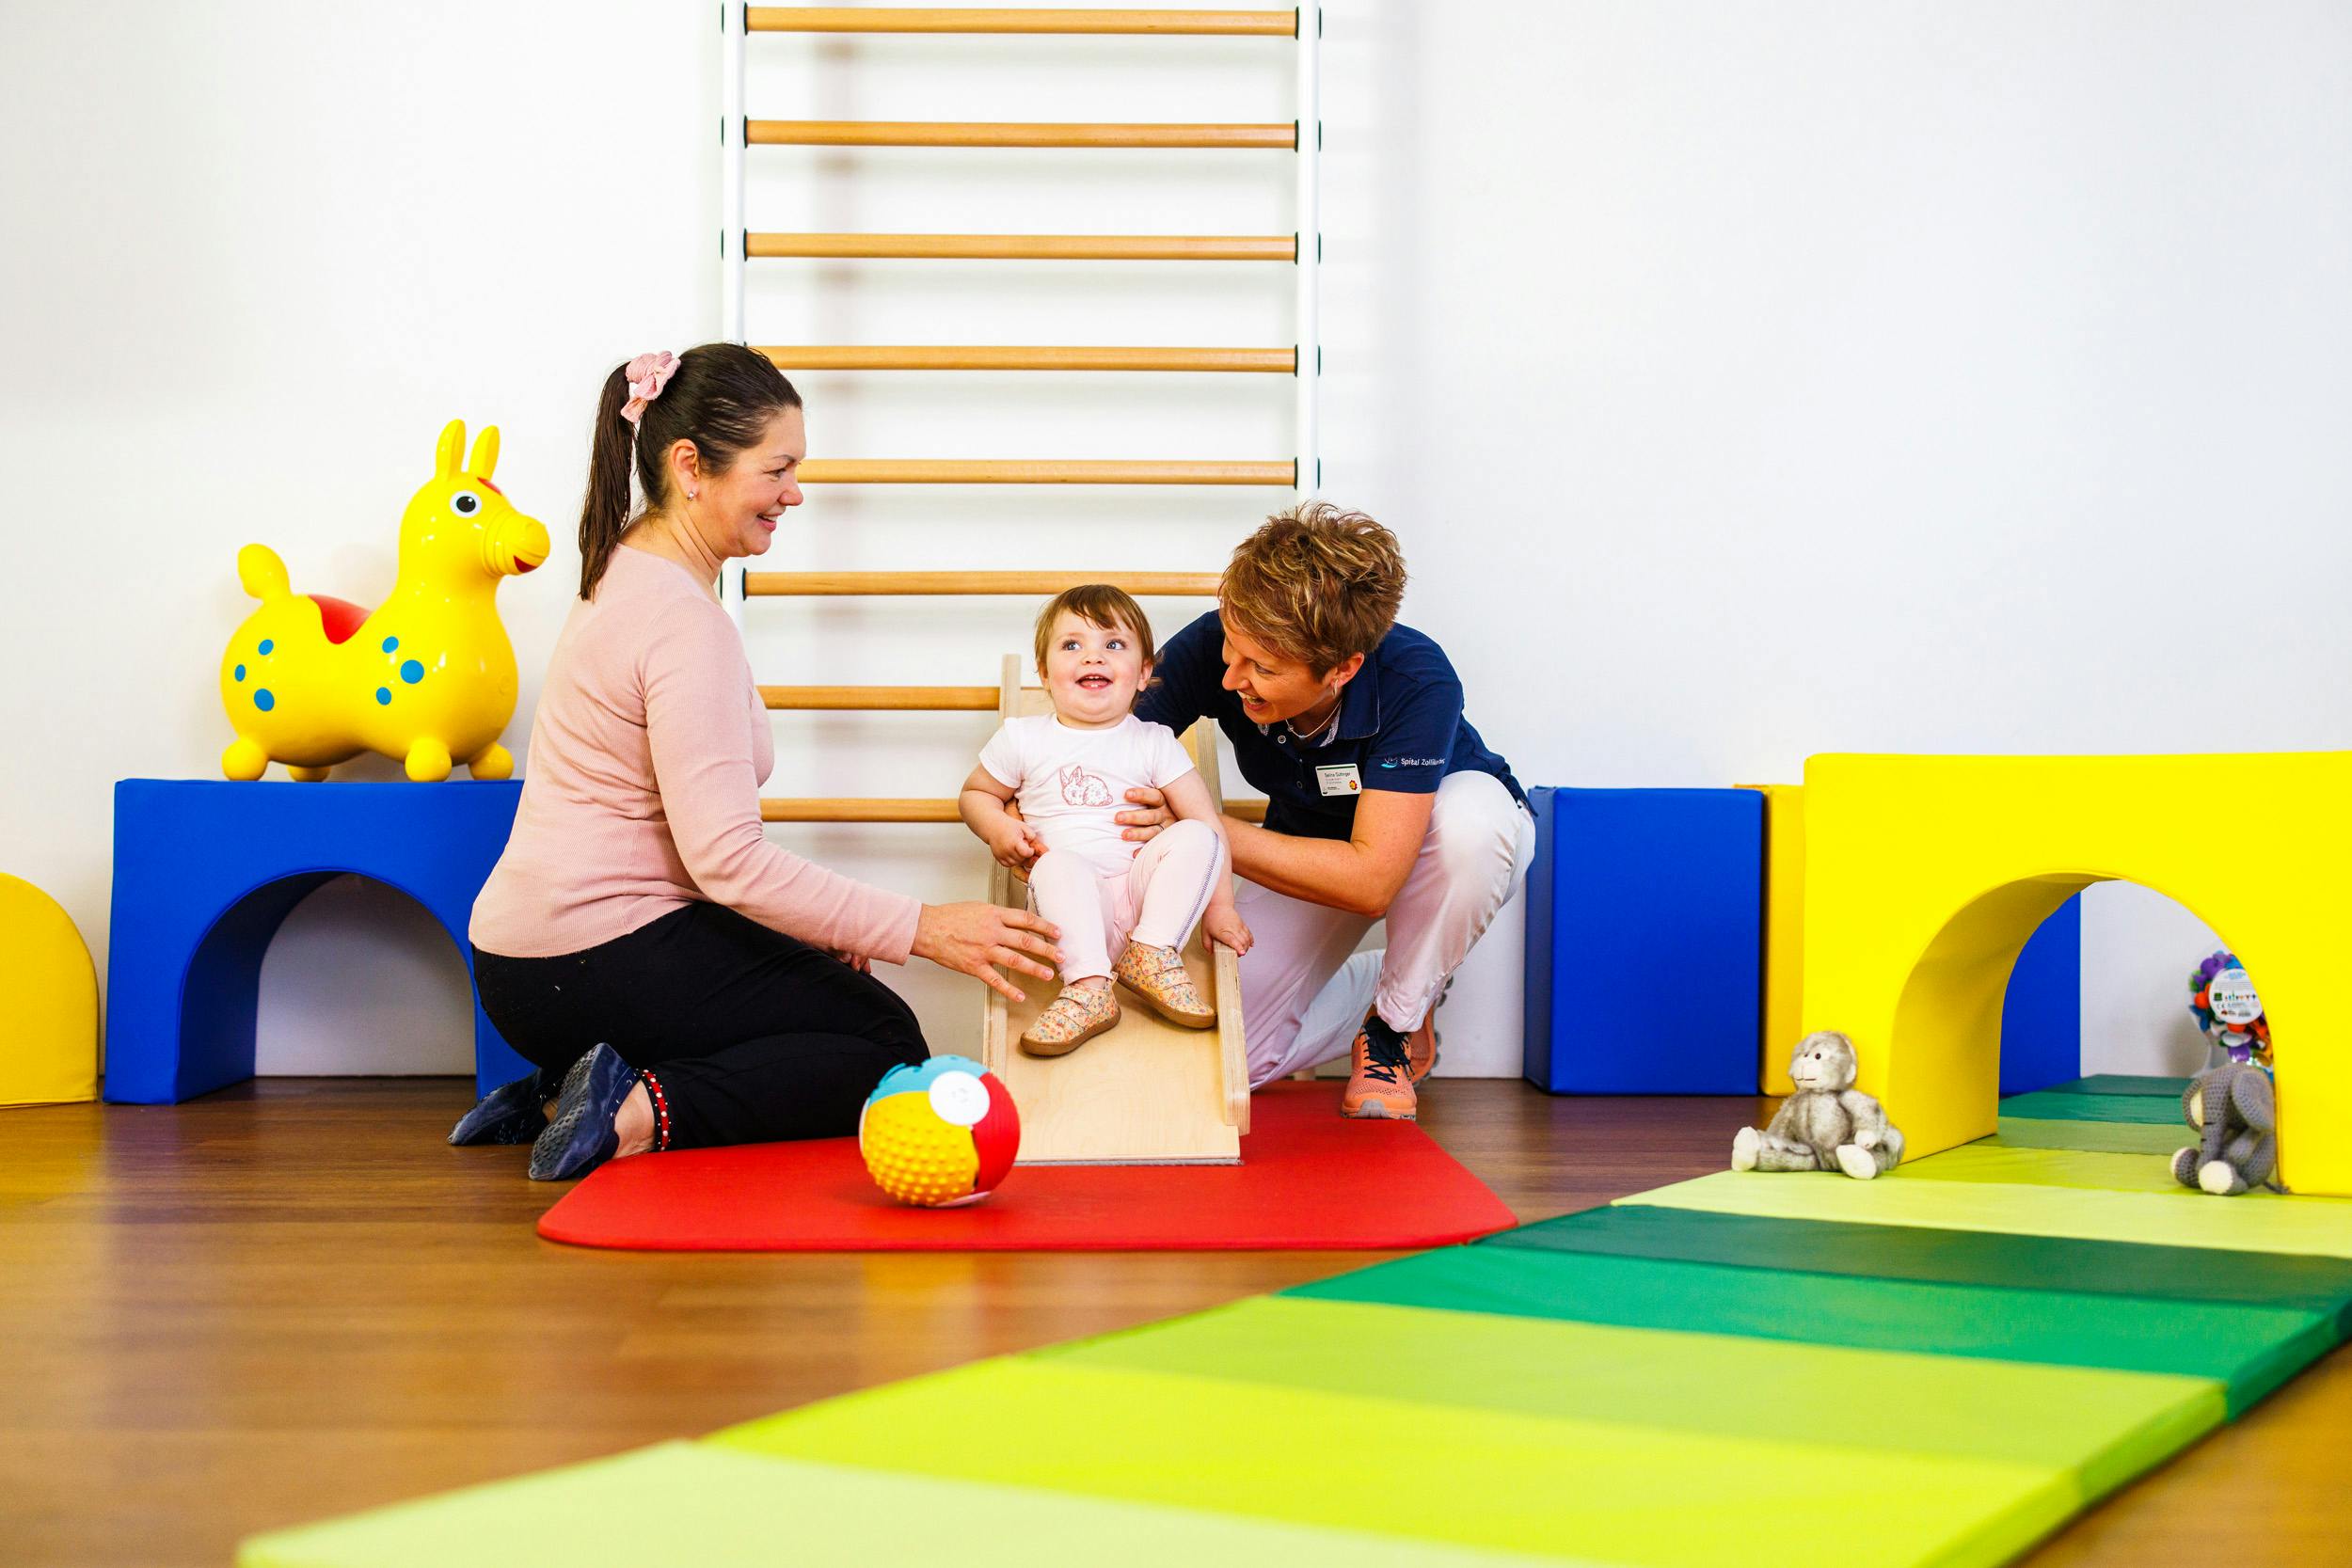 Physiotherapie-Sitzung mit einem Kleinkind und zwei Erwachsenen in einer bunten Praxis.